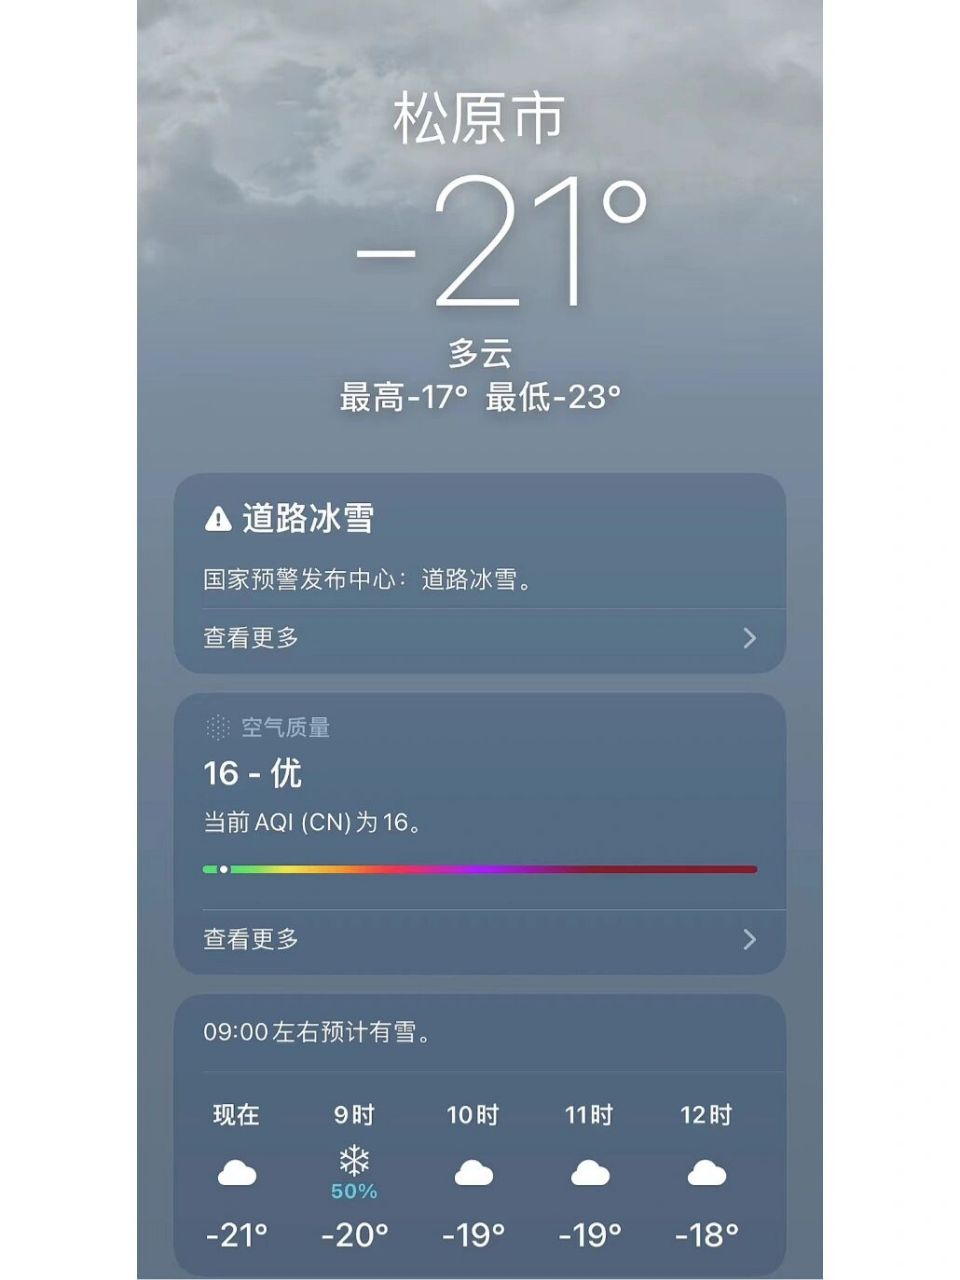 地球随机天气预报019 2022年12月22日 松原市,吉林省,中国(utc  8)